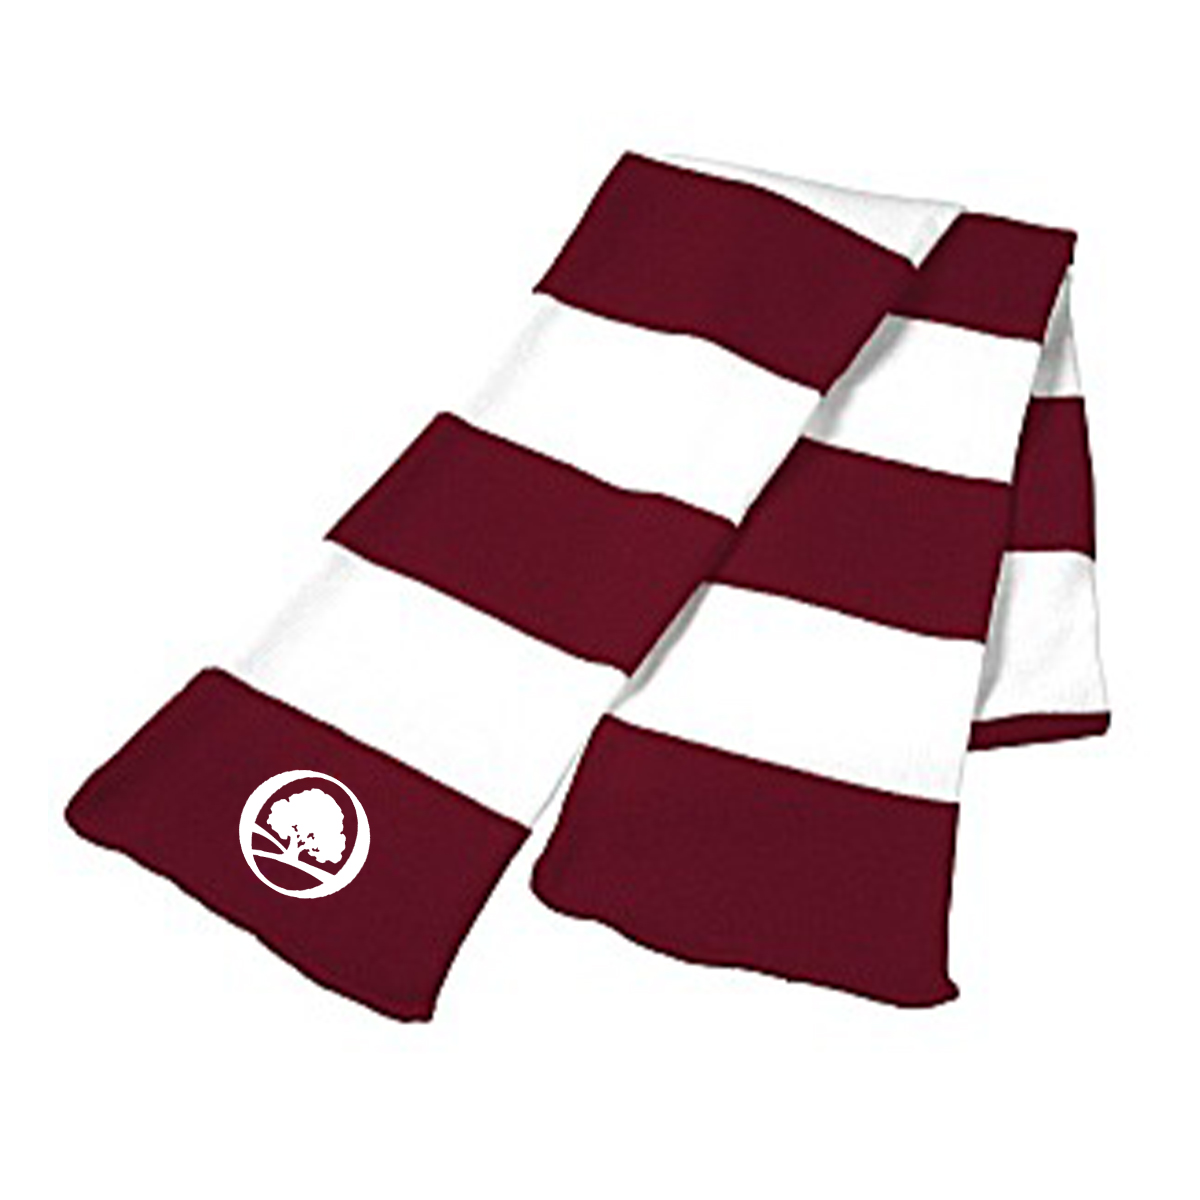 https://oaklawnhospital.org/wp-content/uploads/2022/12/white-logo-on-scarf-1.jpg